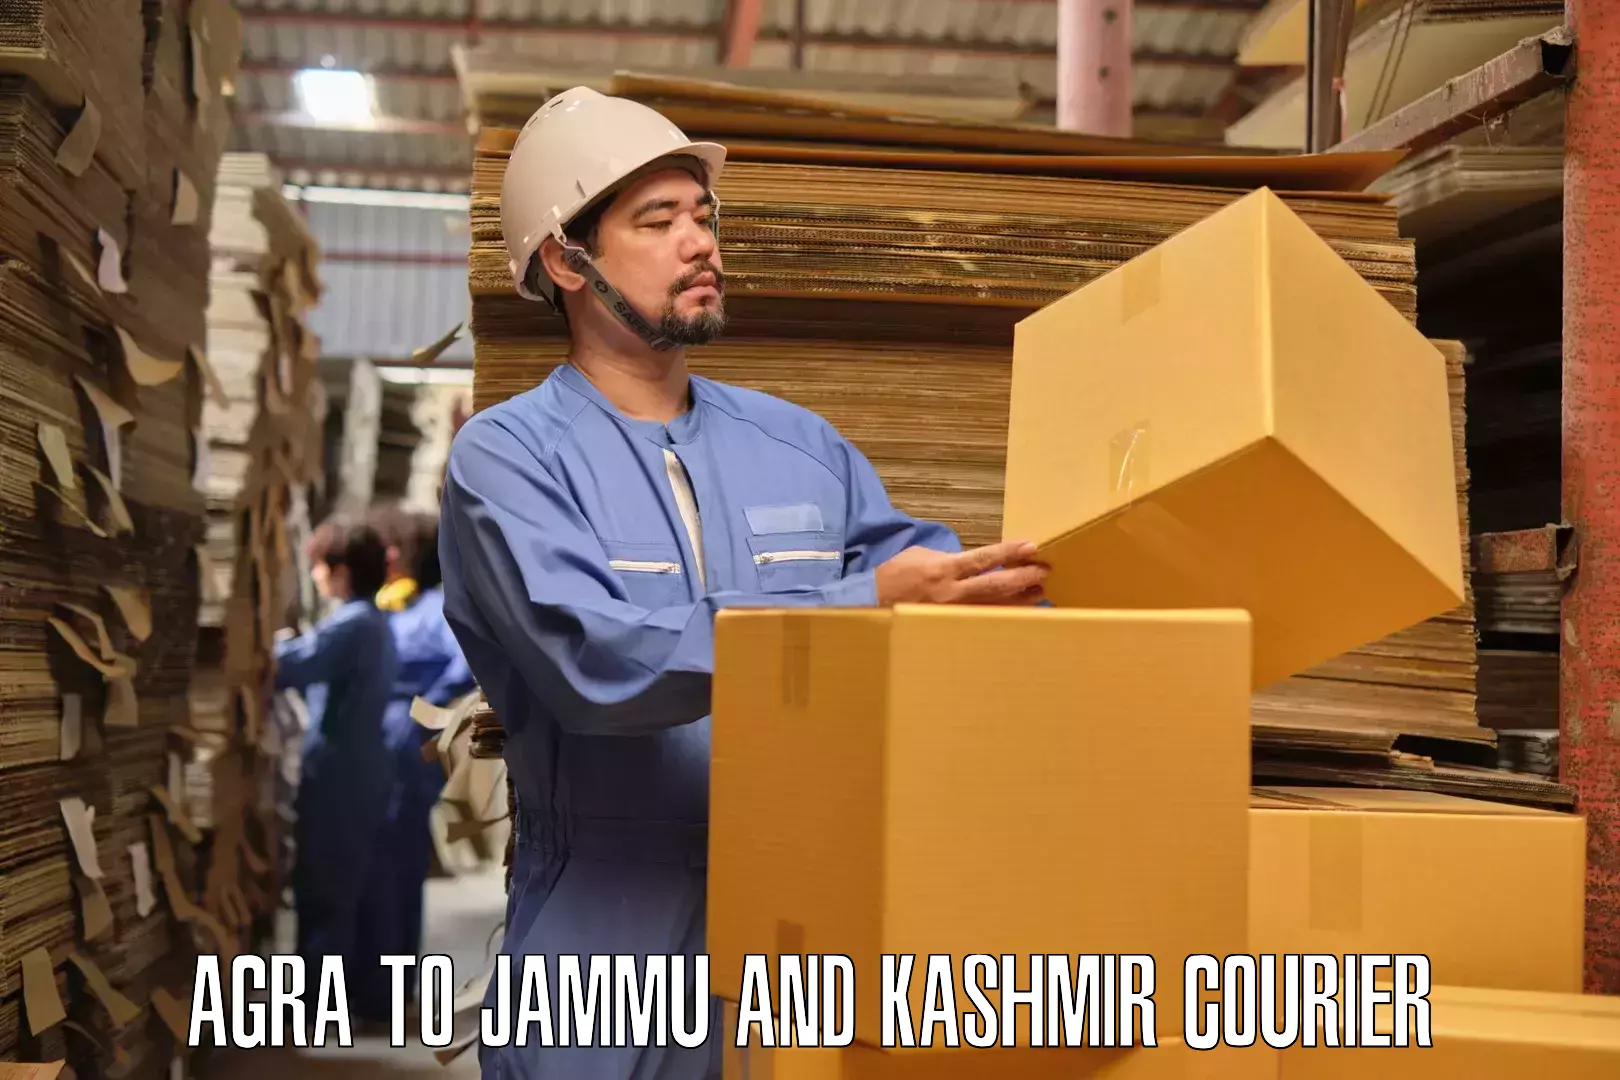 Home goods moving company Agra to Srinagar Kashmir